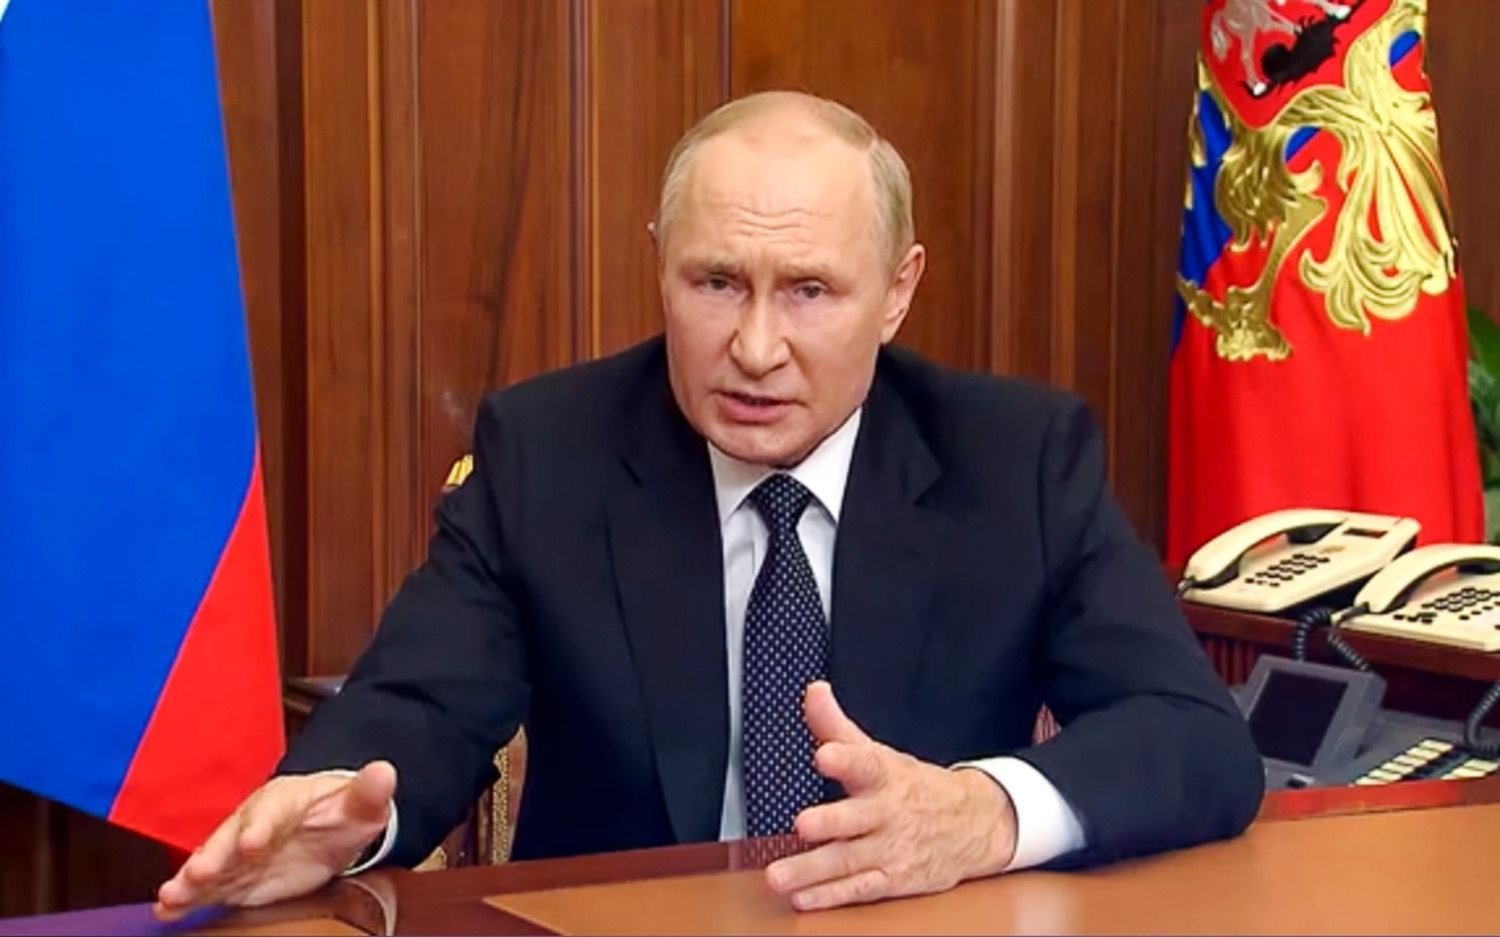 Putin moviliza a 300 mil soldados en Ucrania y amenaza a Occidente con usar armas nucleares